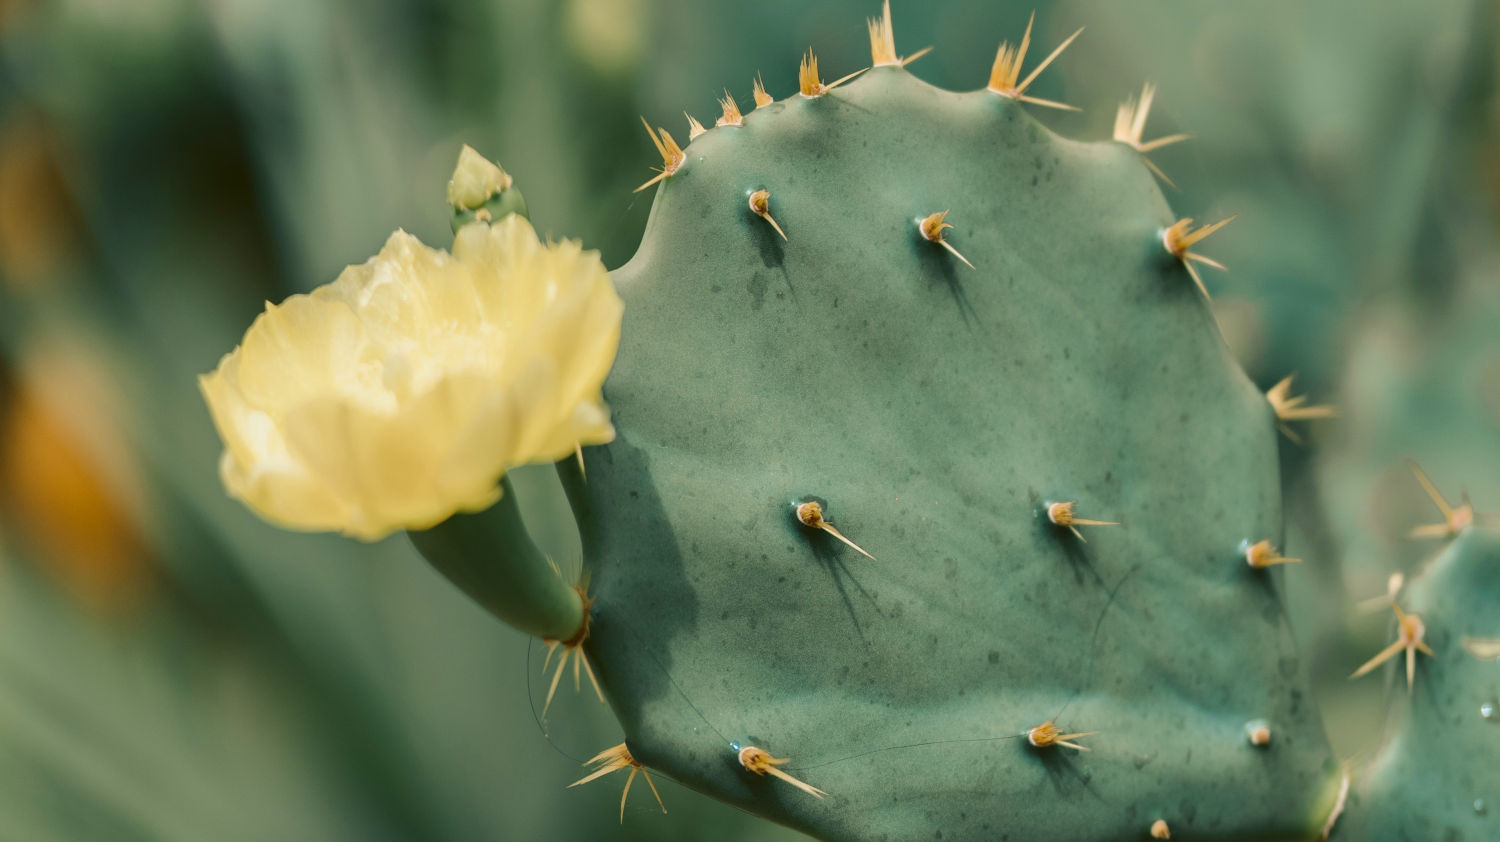 flowering cactus care